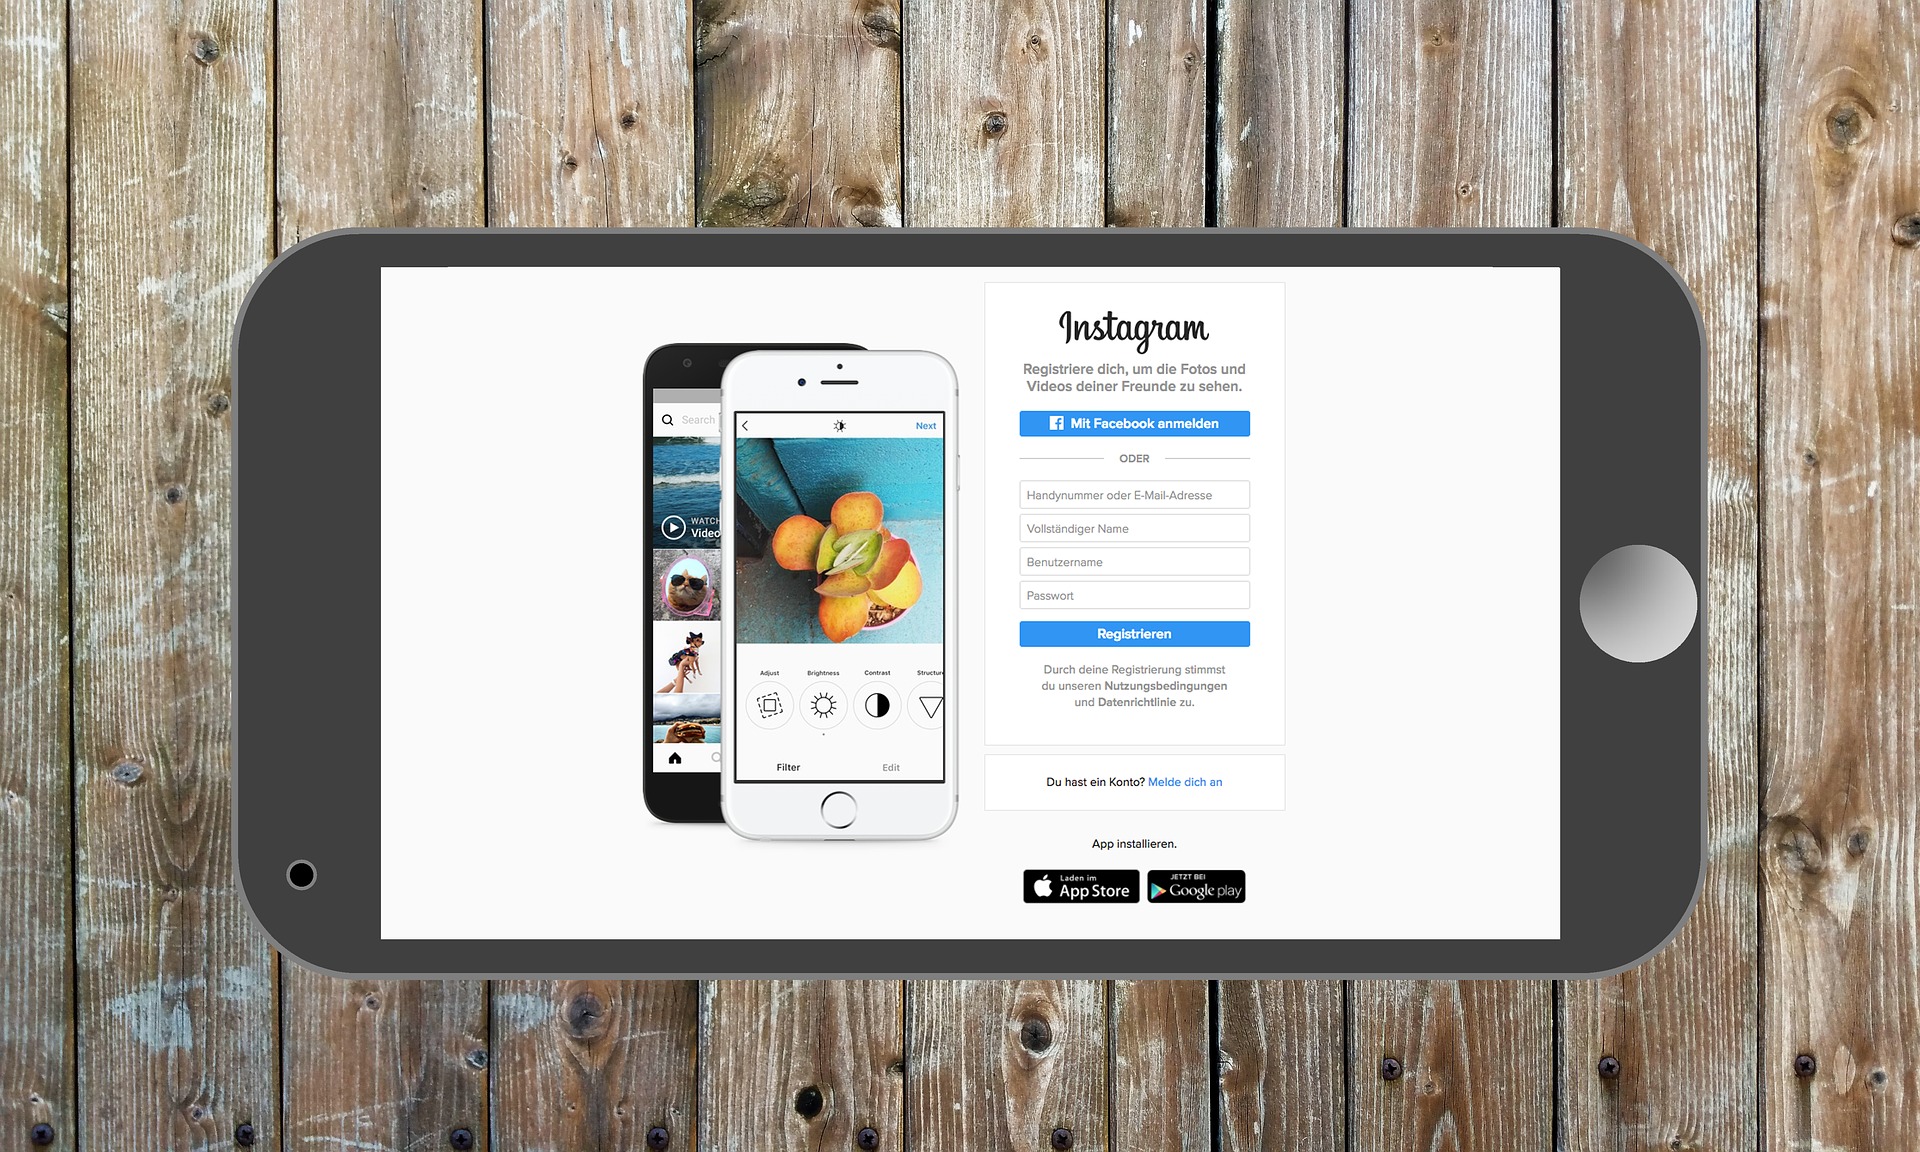 Društvena mreža Instagram pomaže da imate bolje pamćenje